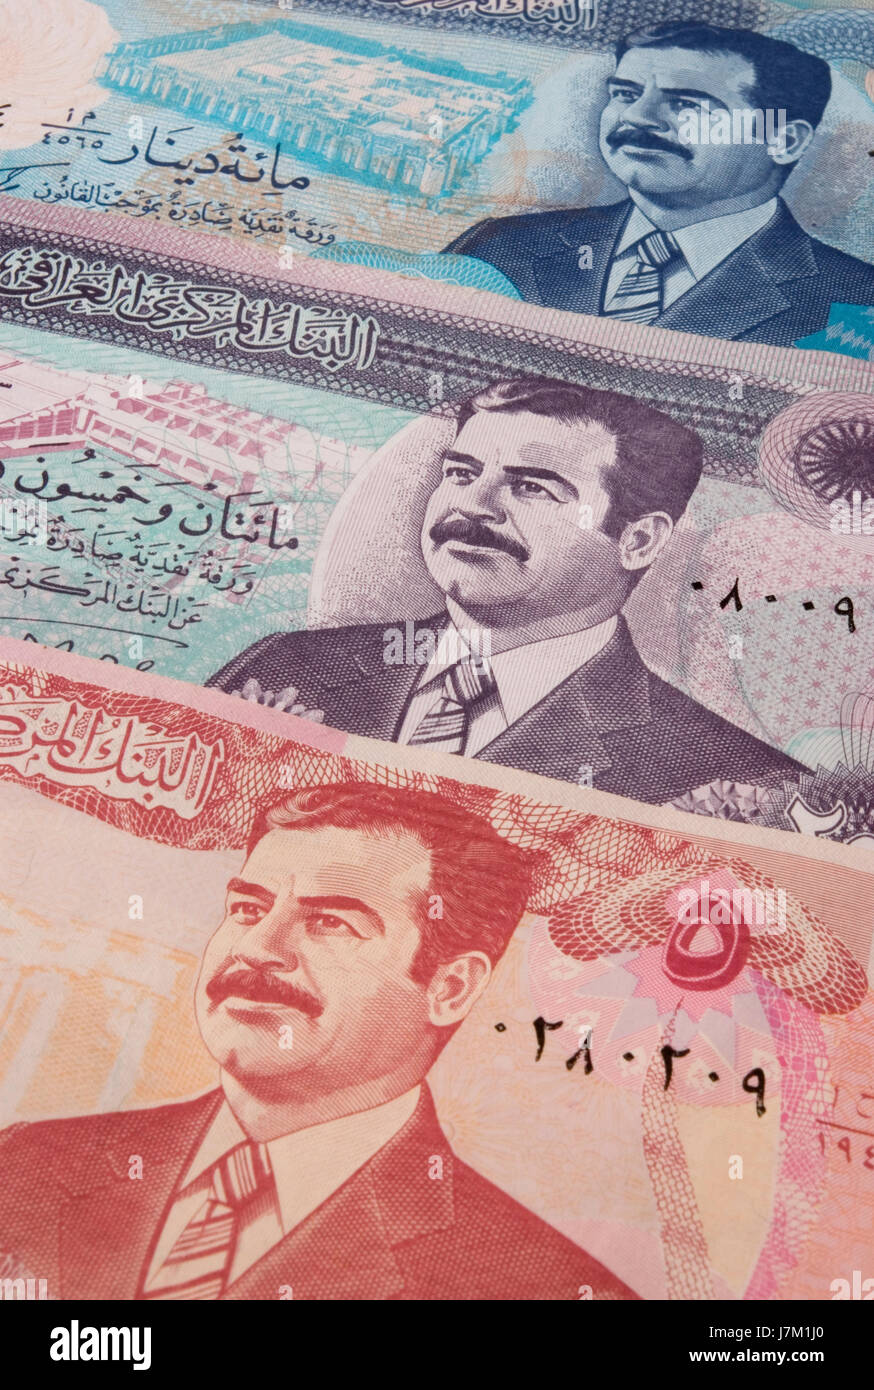 Iraqi Bank Notes Stock Photo